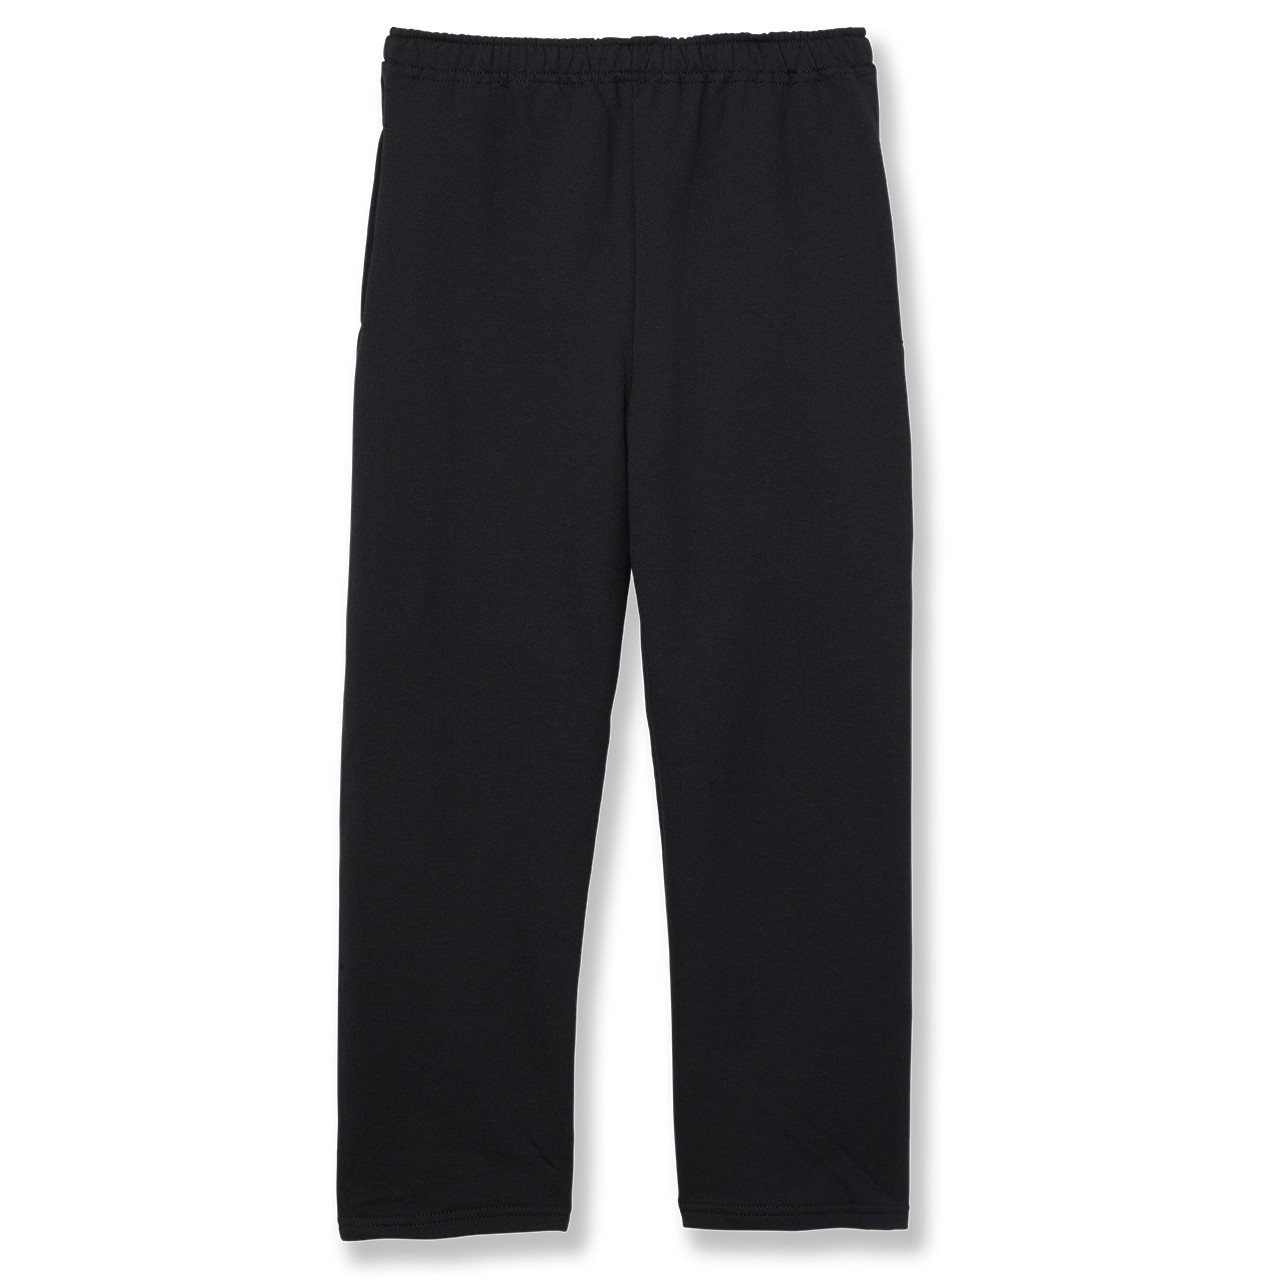 Open Bottom Sweatpants [MD068-974-BLACK]